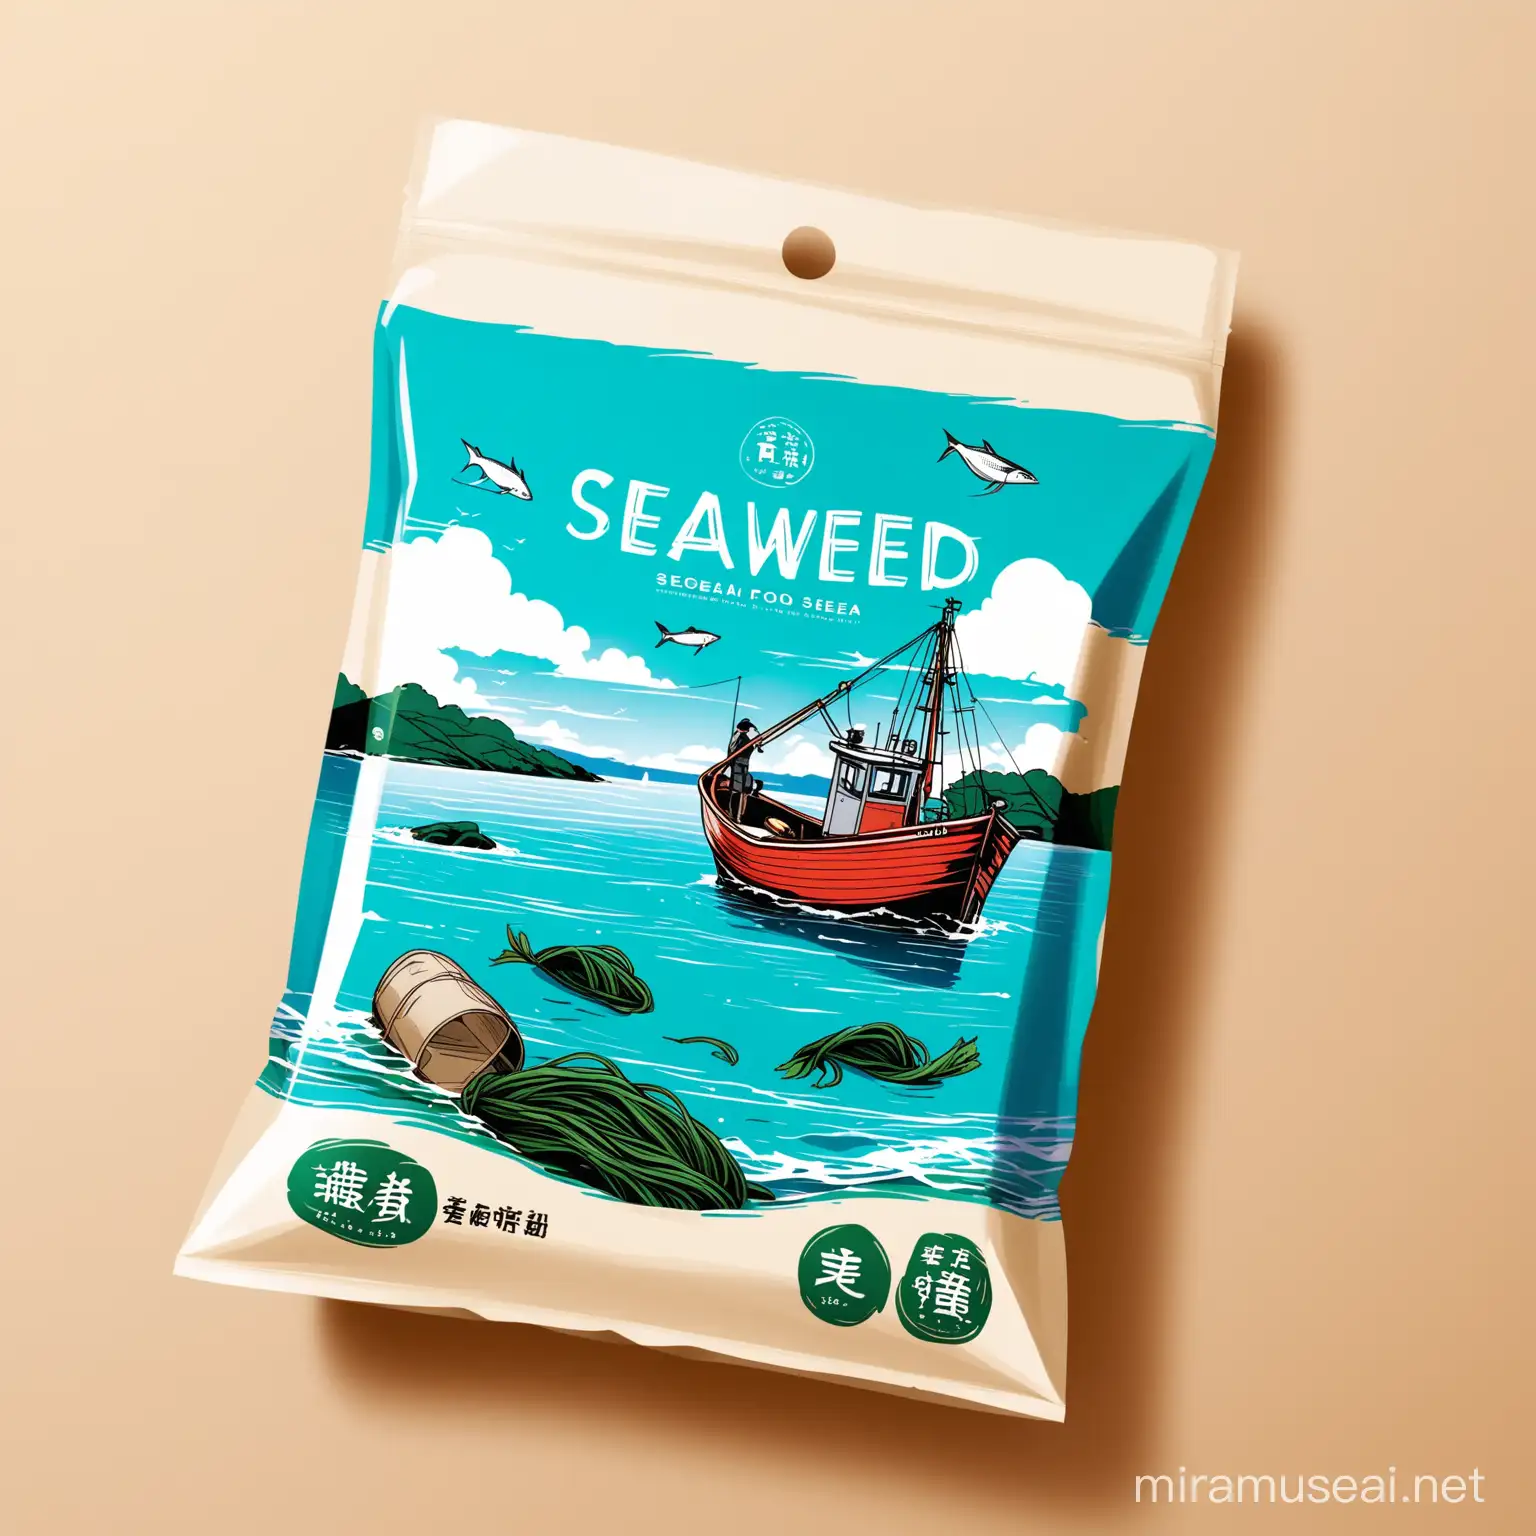 海带食品包装袋，包装袋上的插画有一只小渔船、大海、天空。不要有房子